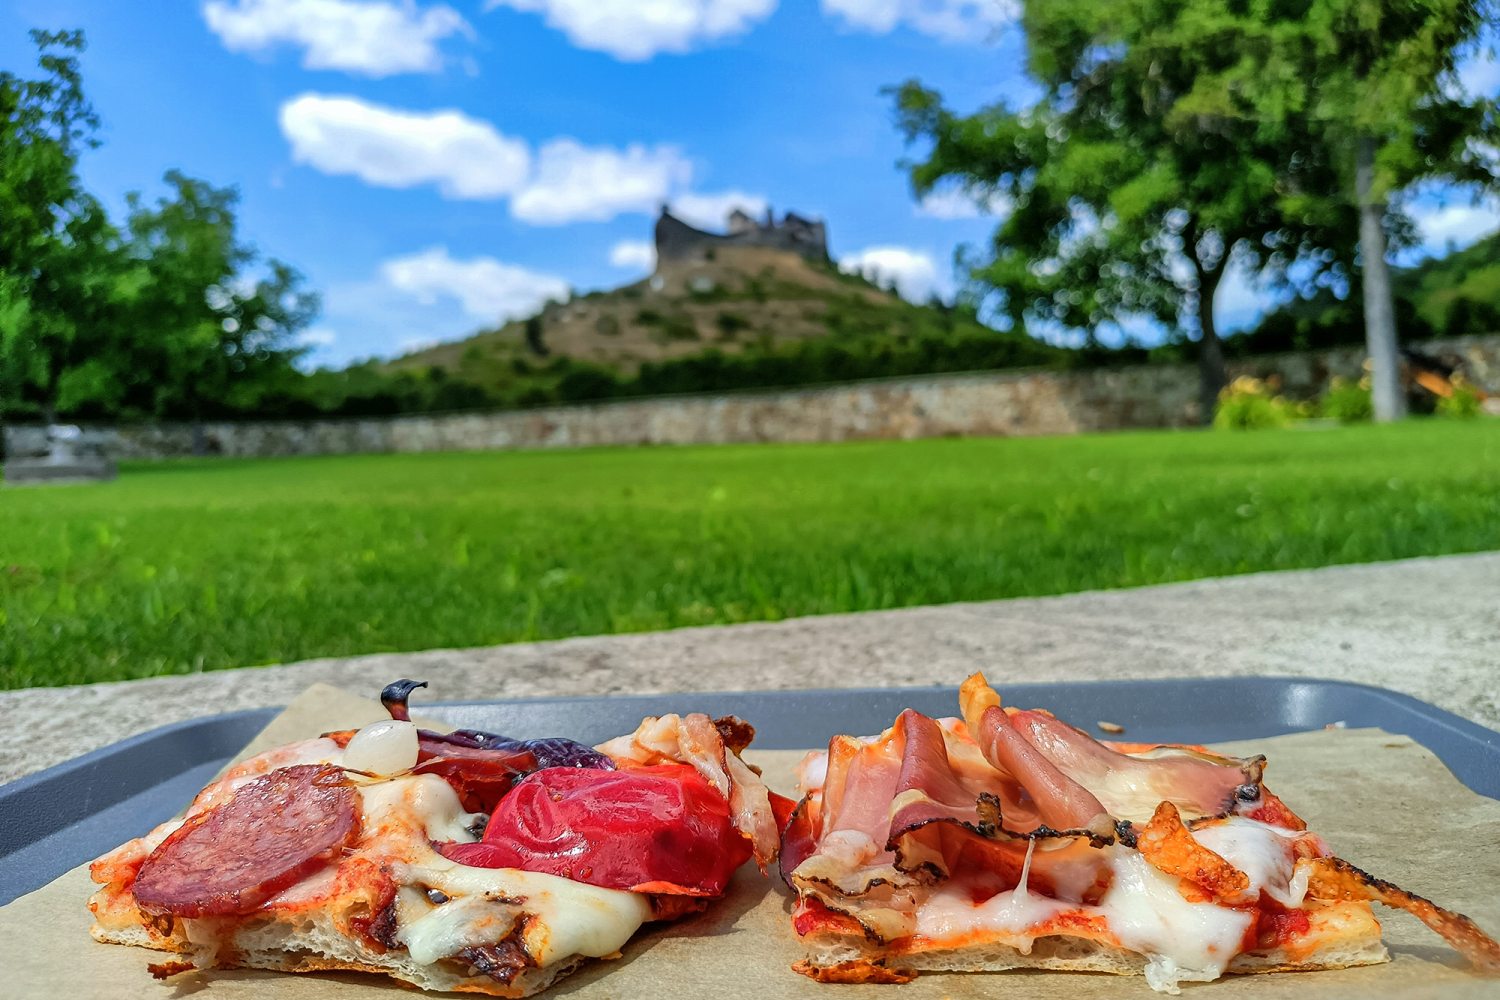 Pizza és a vár (Terra-Boldogkő by Anyukám mondta)